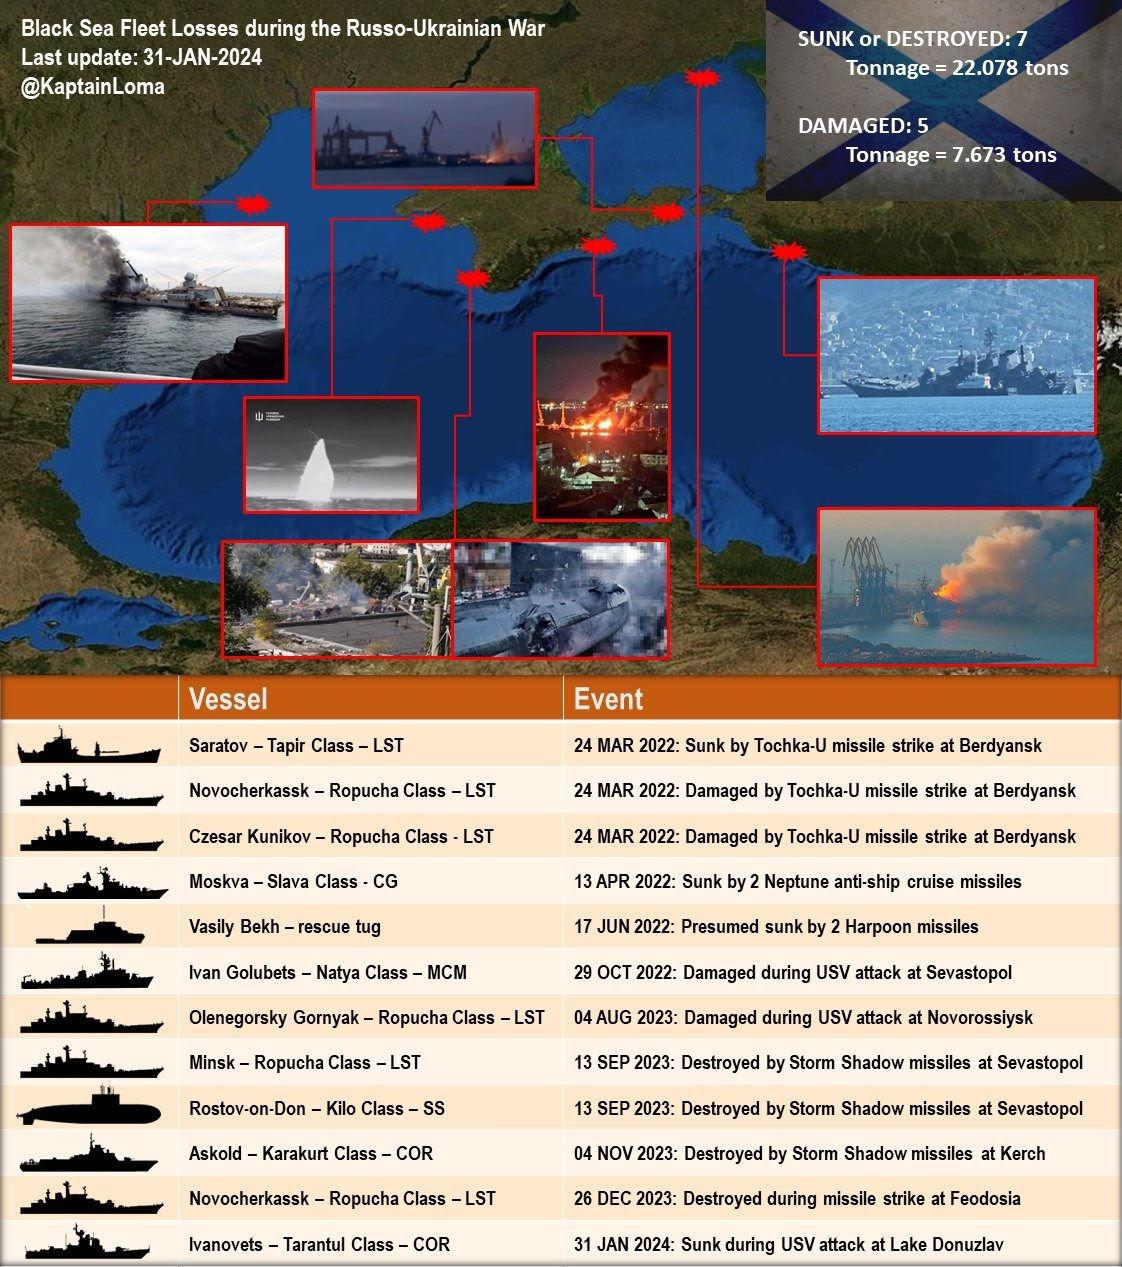 Rusya-Ukrayna Savaşında Rusların Karadeniz'deki gemi kayıpları